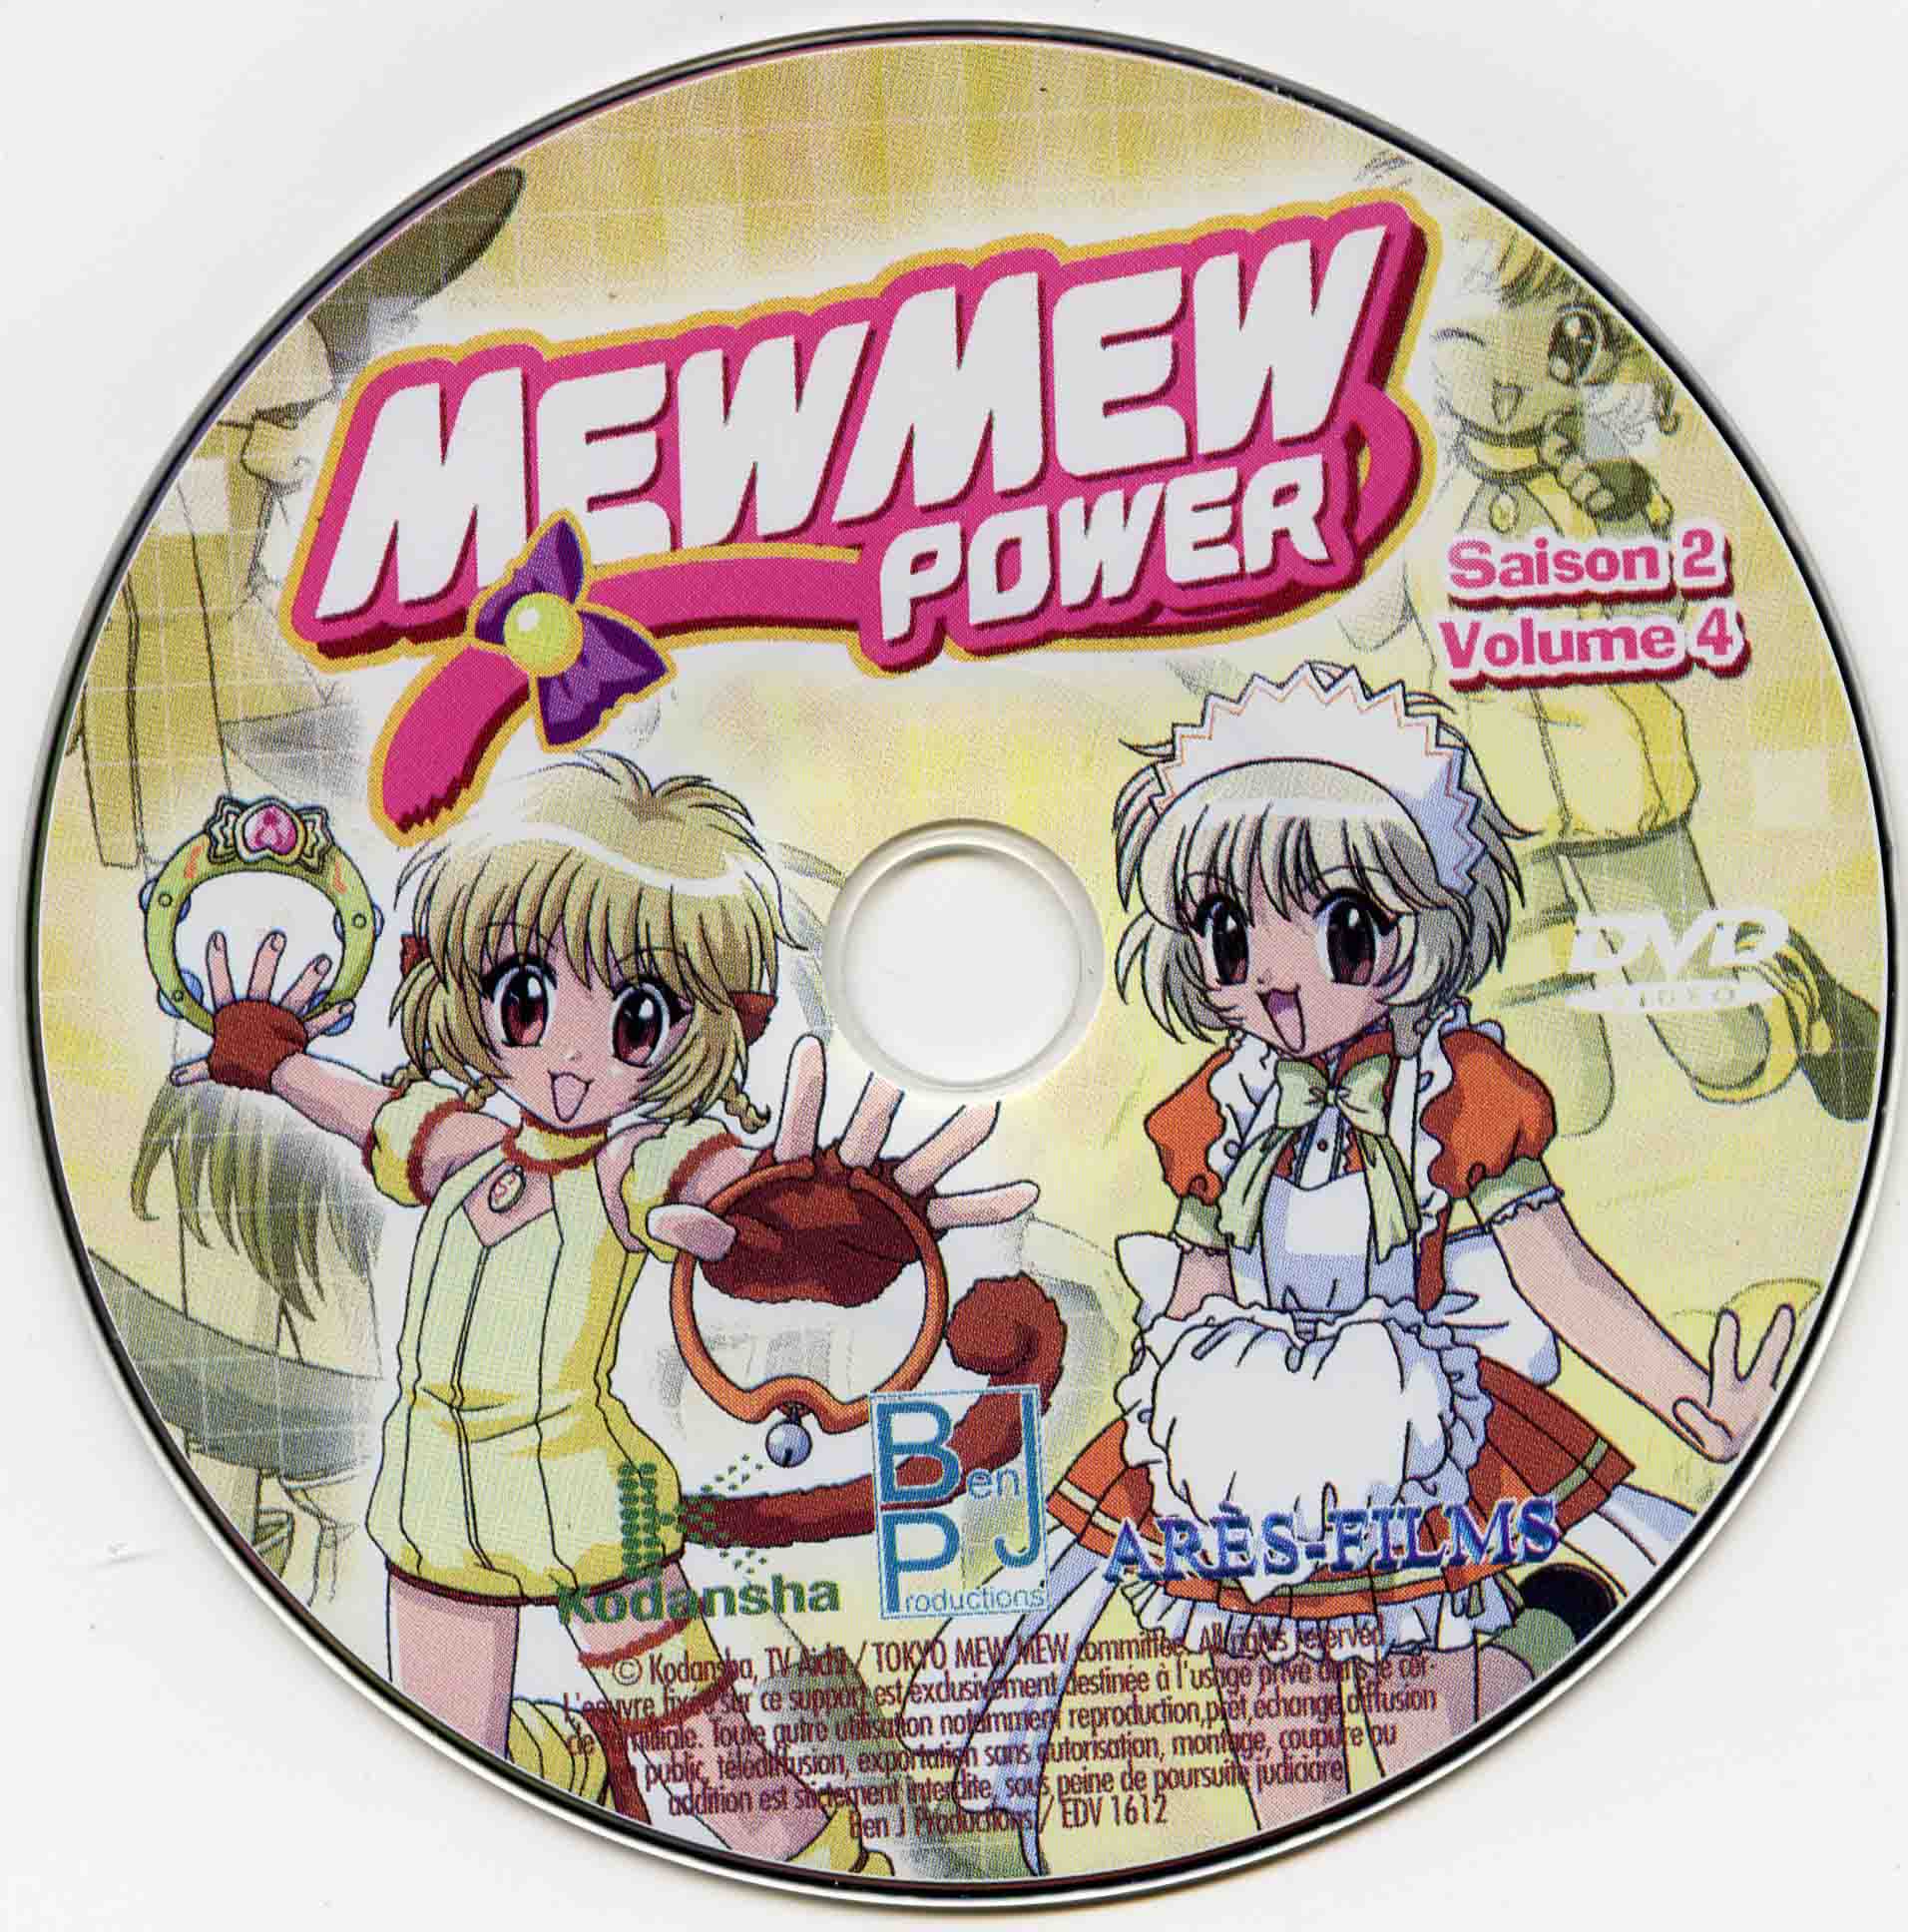 MewMew power Saison 2 DISC 4